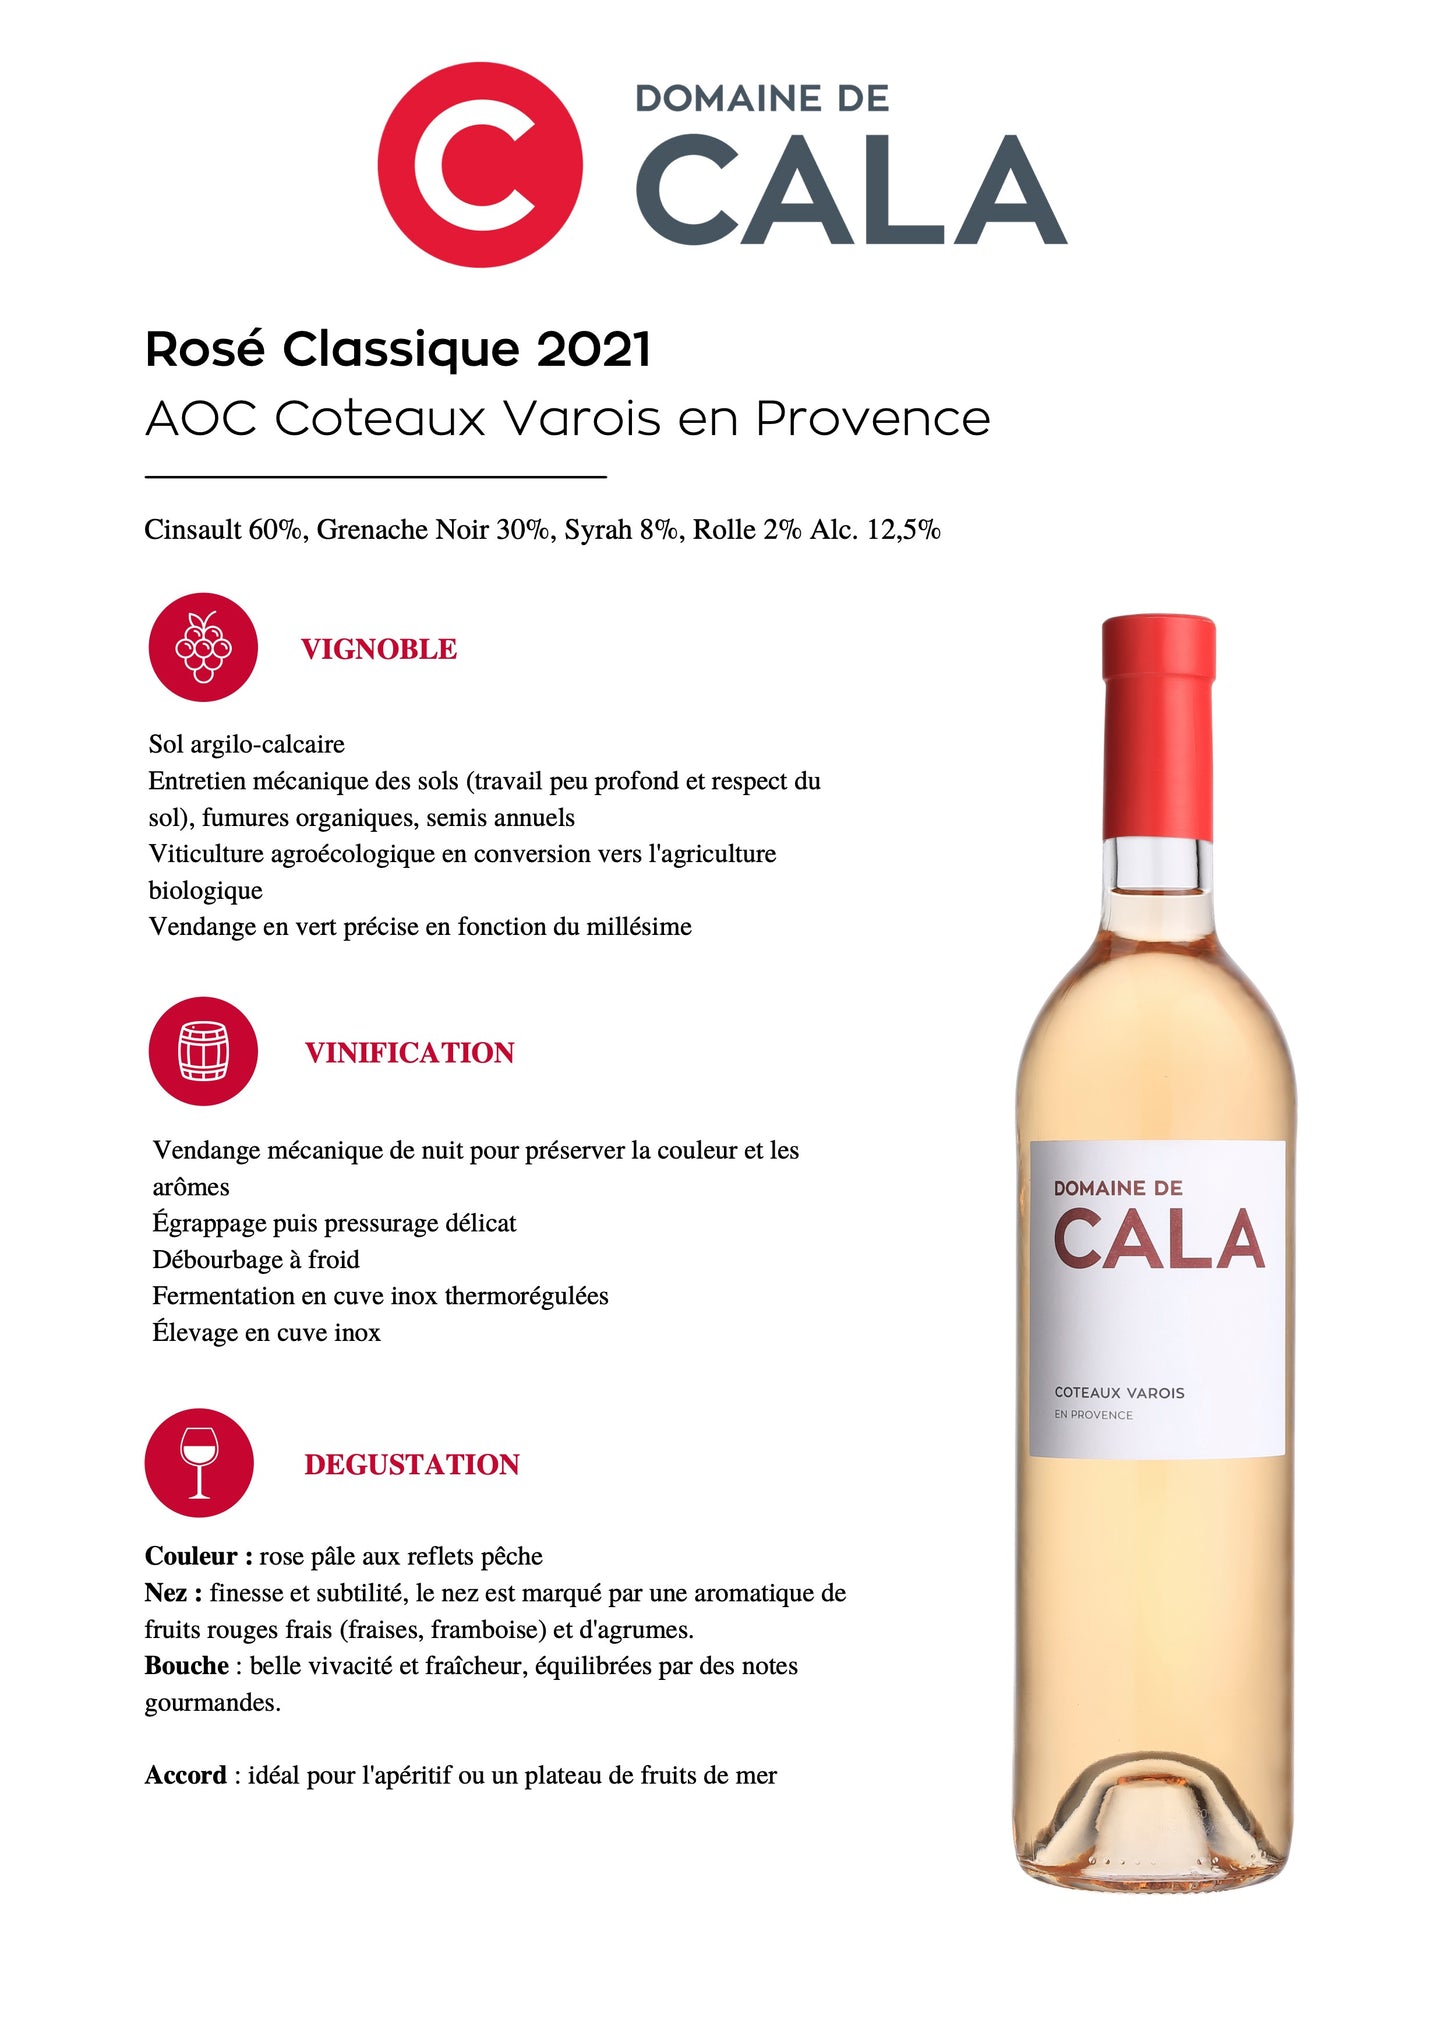 Domaine de Cala Côteaux Varois 2021 rosé